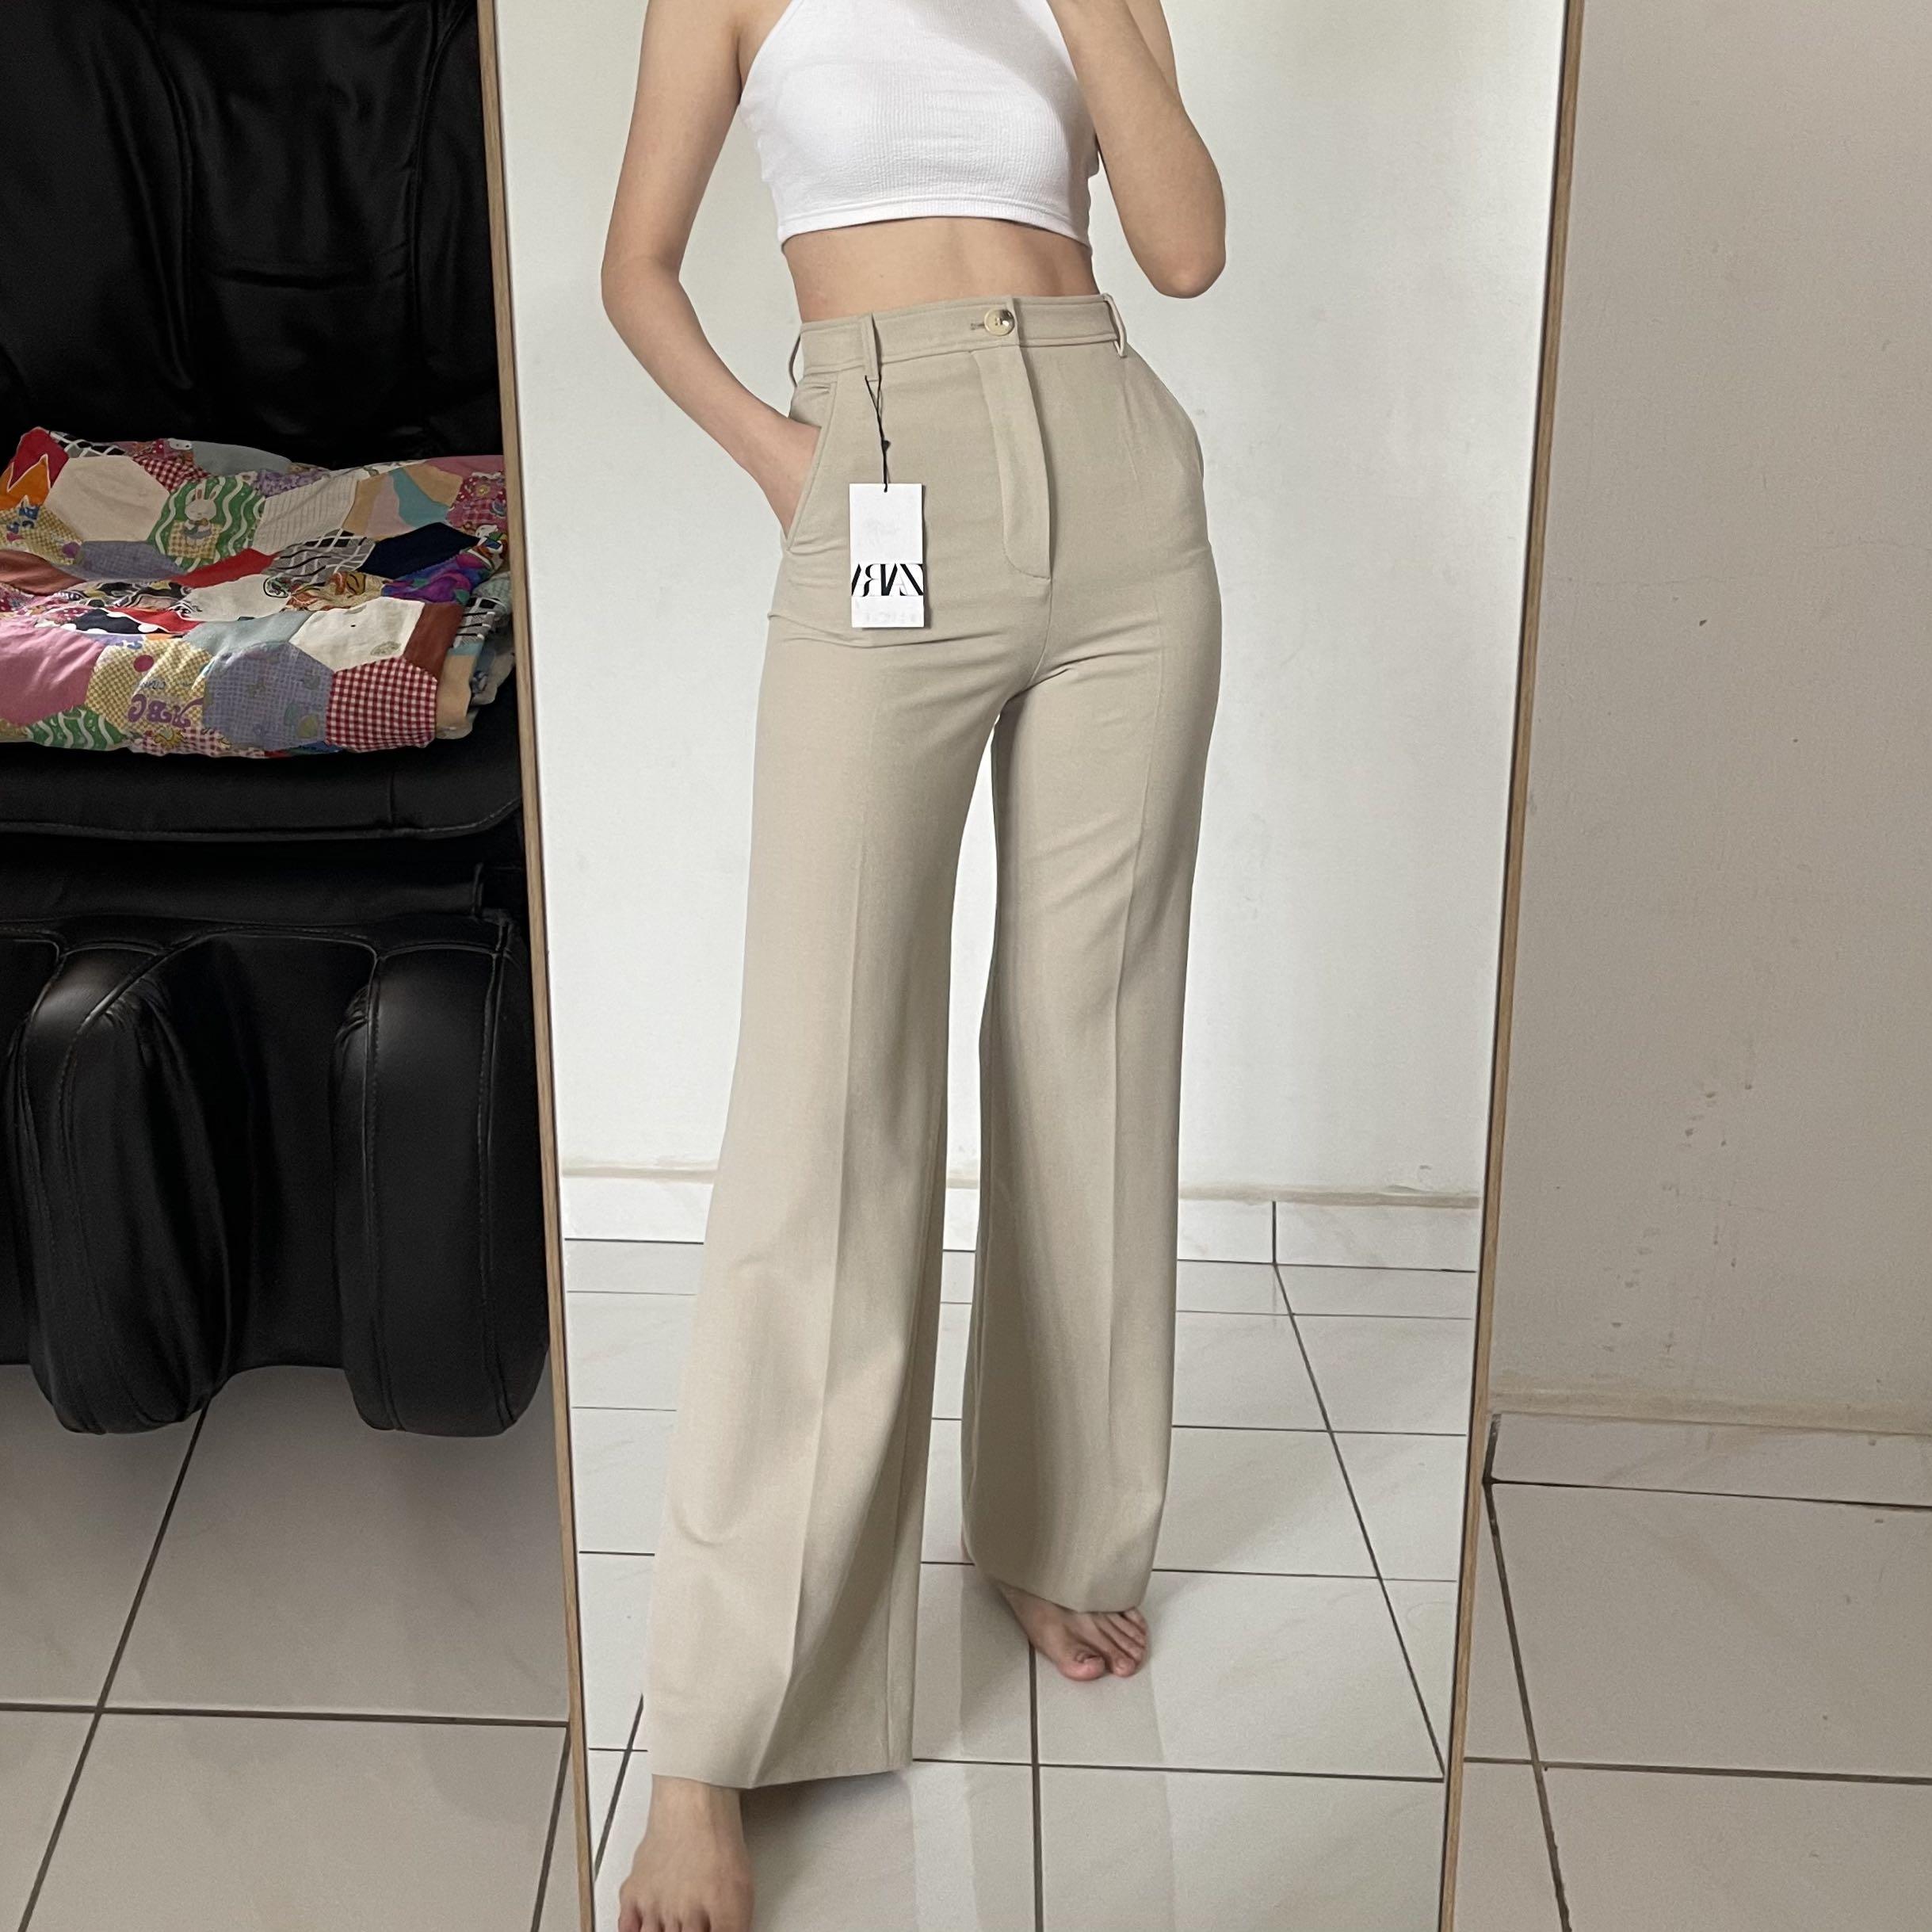 Zara pants 